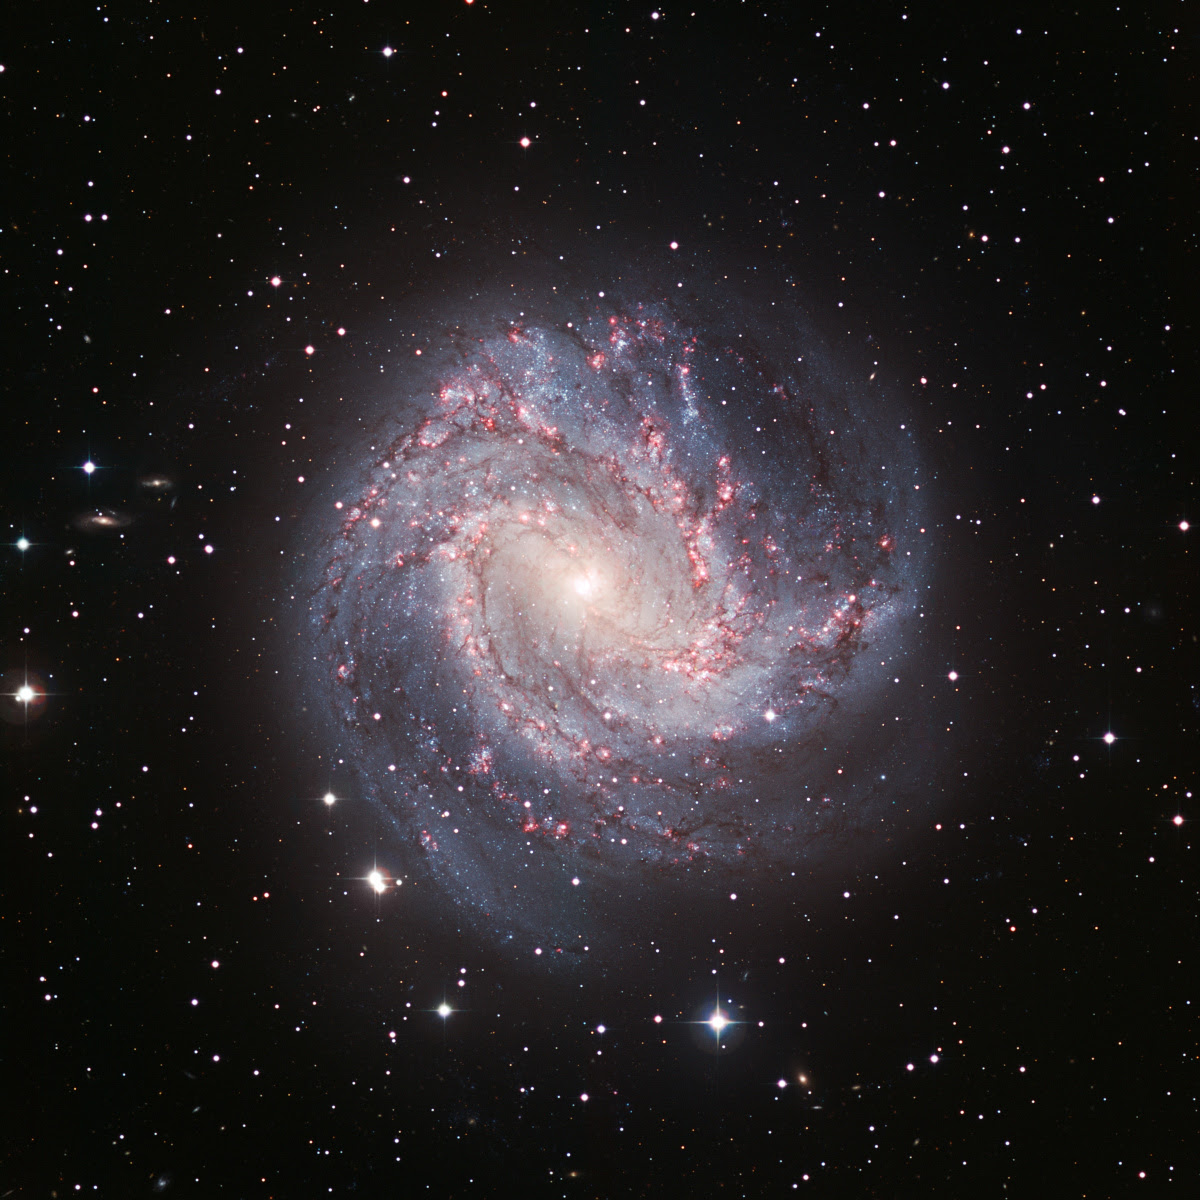 Galáxias elípticas, espirais, irregulares, Via Láctea — Astronoo